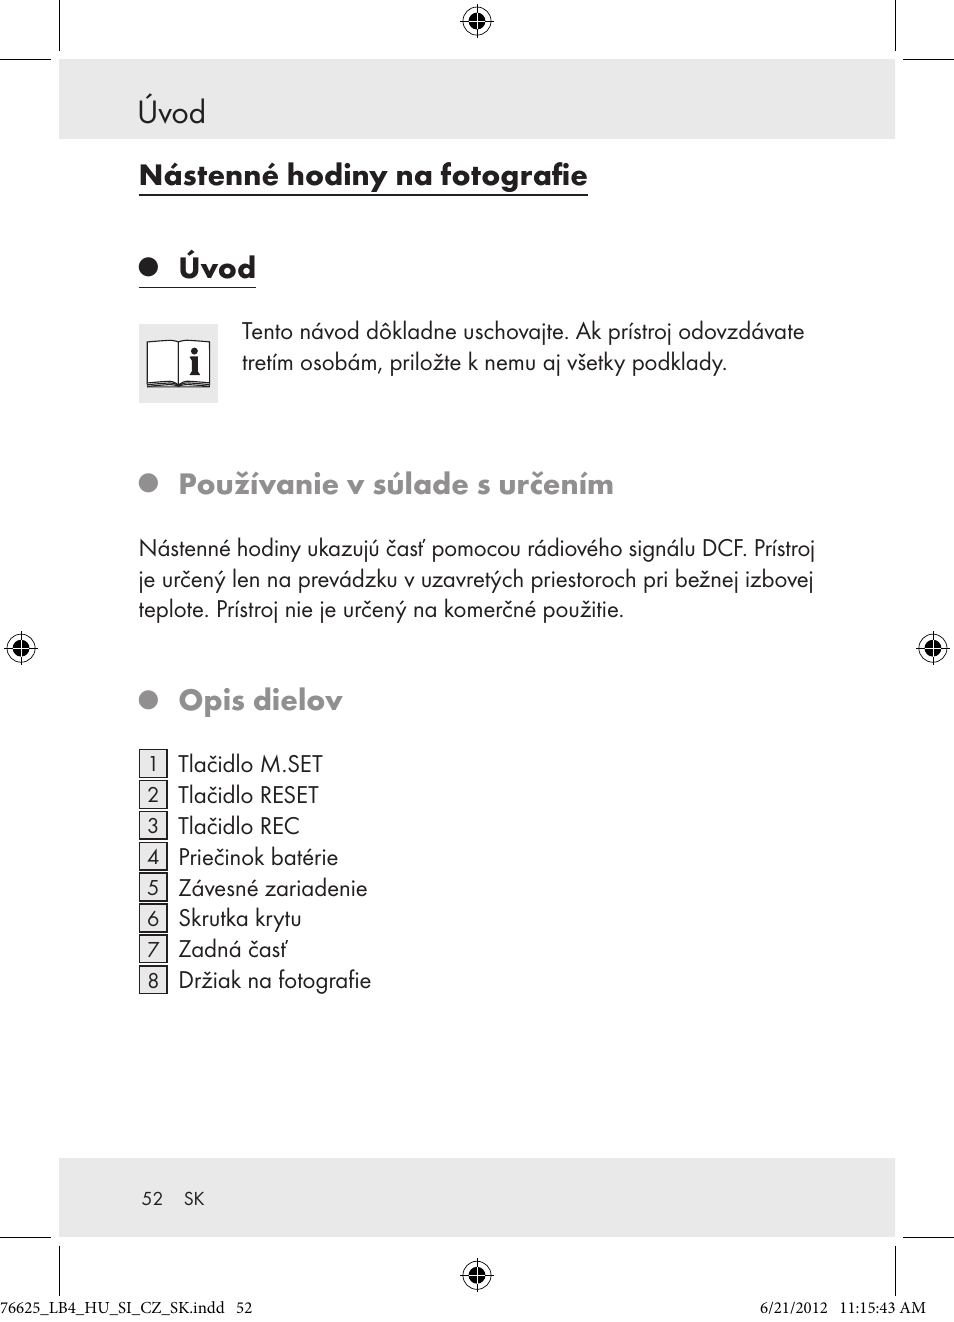 Úvod, Nástenné hodiny na fotografie, Používanie v súlade s určením | Auriol  Z29955A User Manual | Page 52 / 70 | Original mode